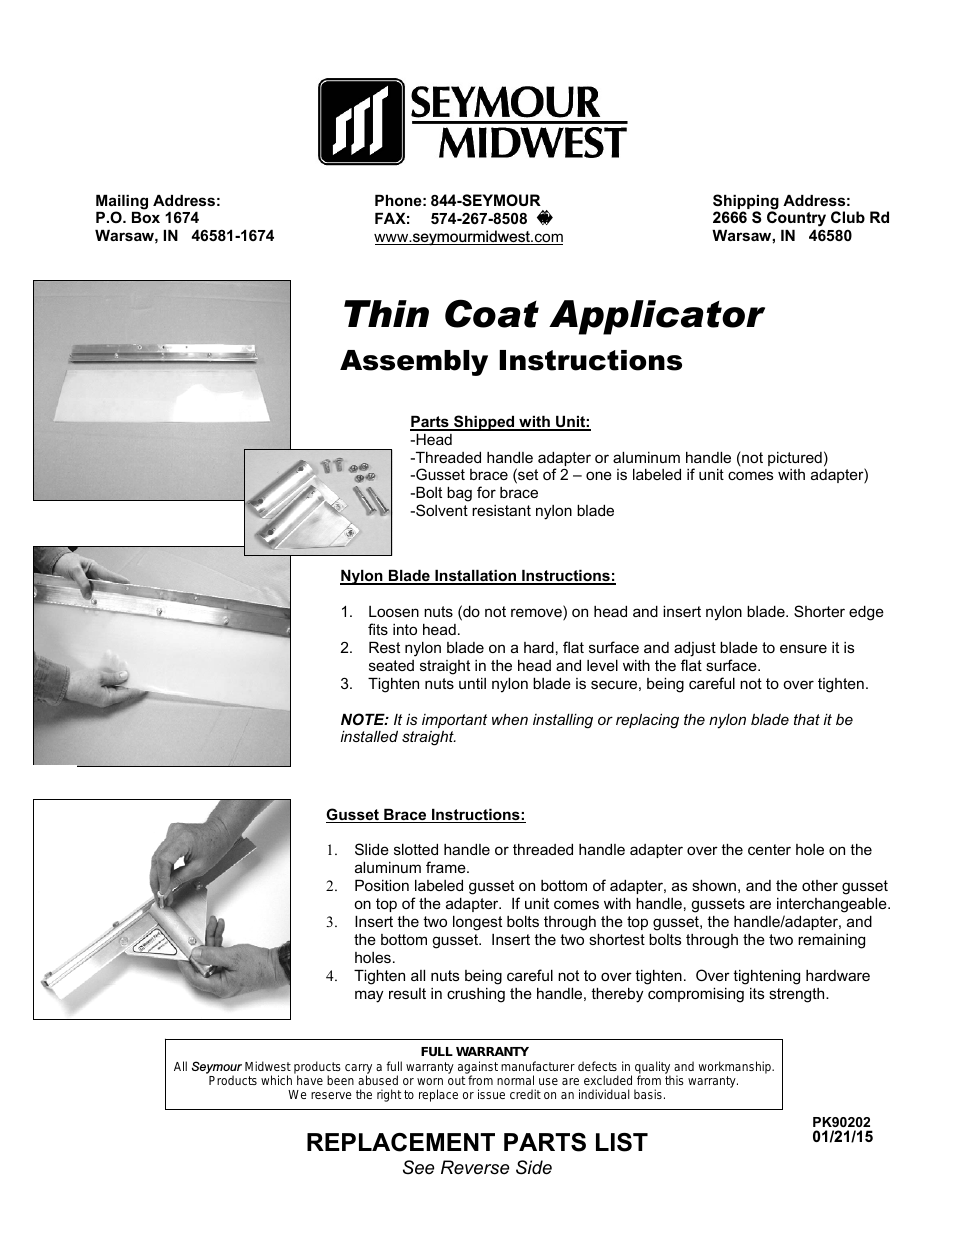 Thin Coat Applicator(PK90202)